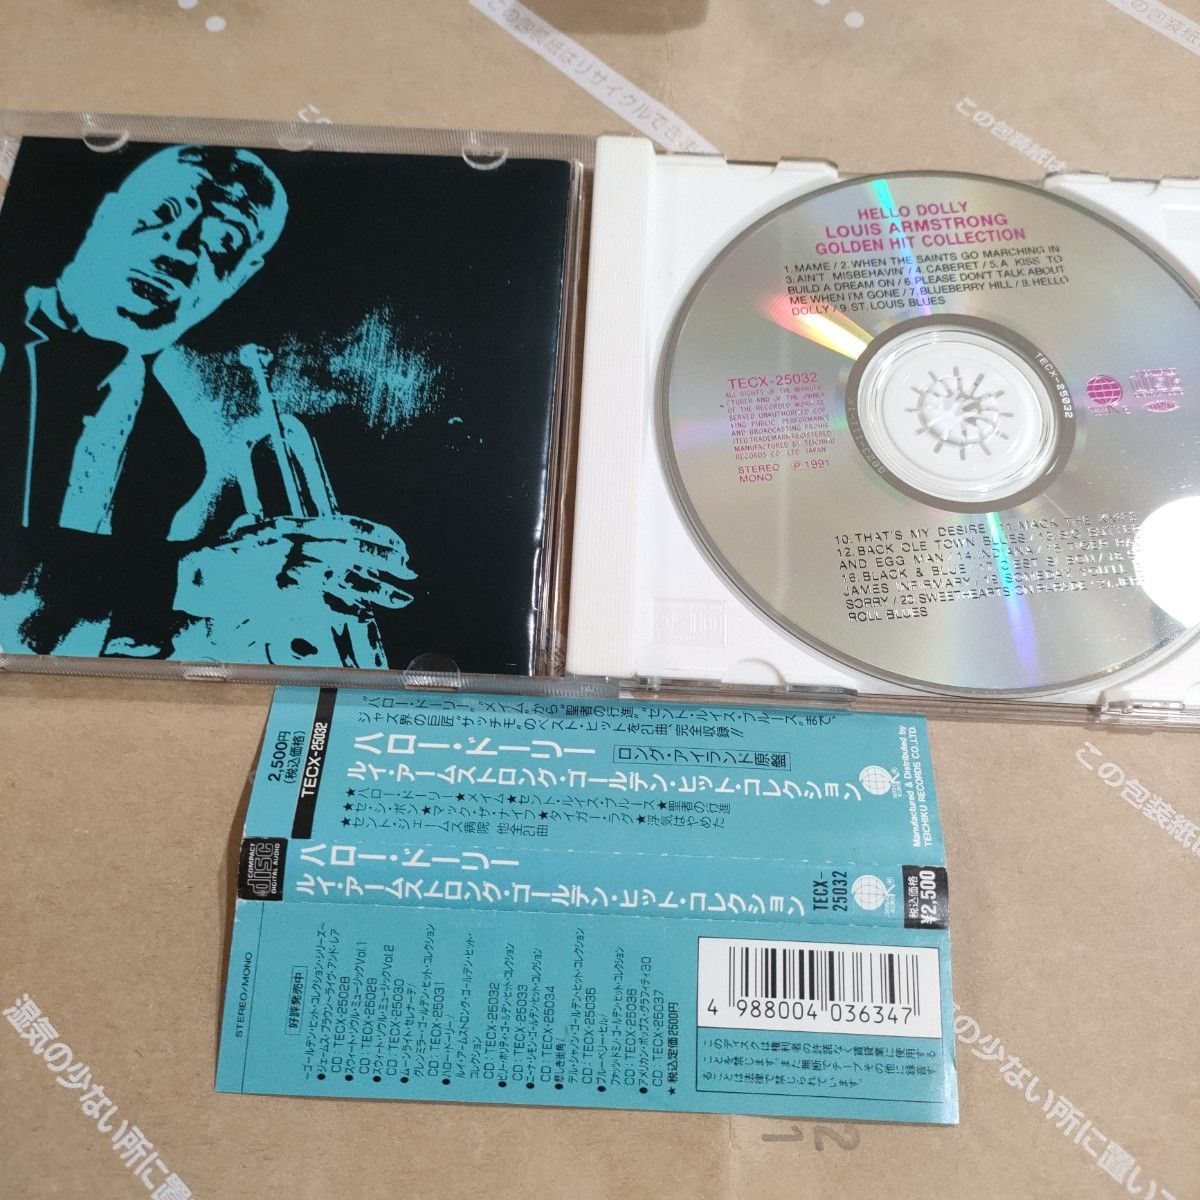 「ルイ・アームストロング/セ・シ・ボン 」CD